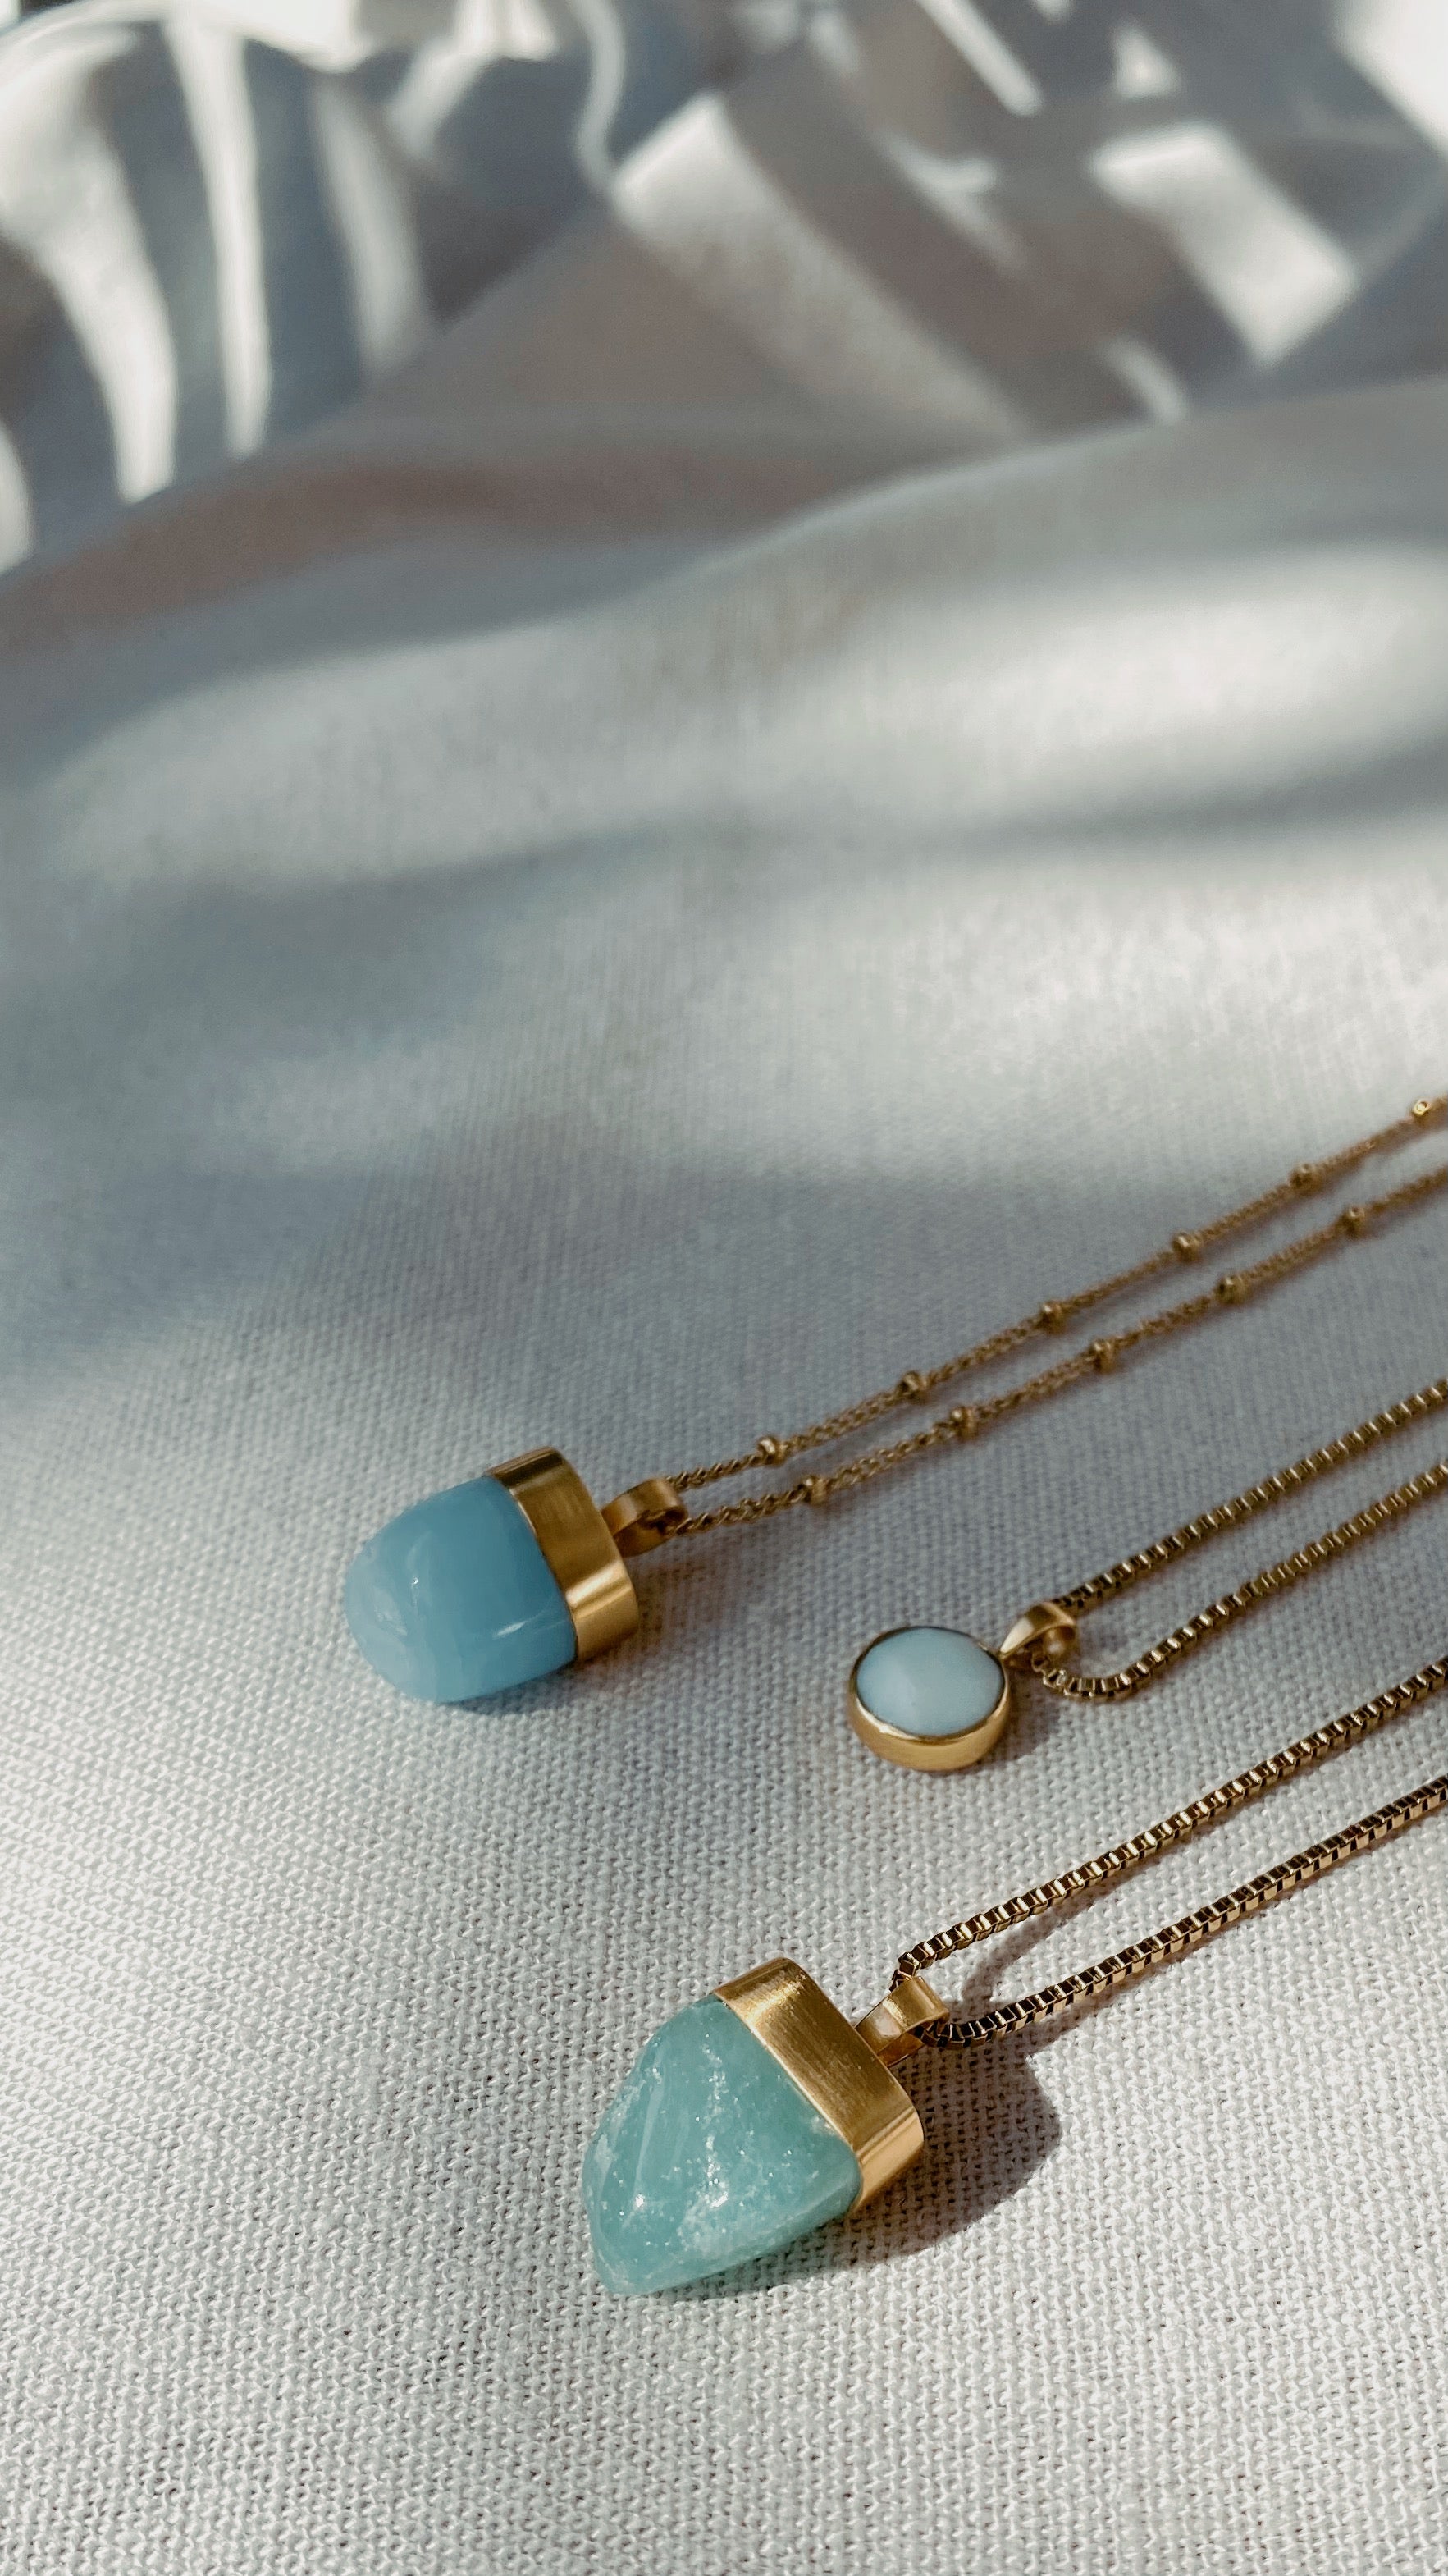 MENTARI AVENTURIN Halskette | Necklace Gold